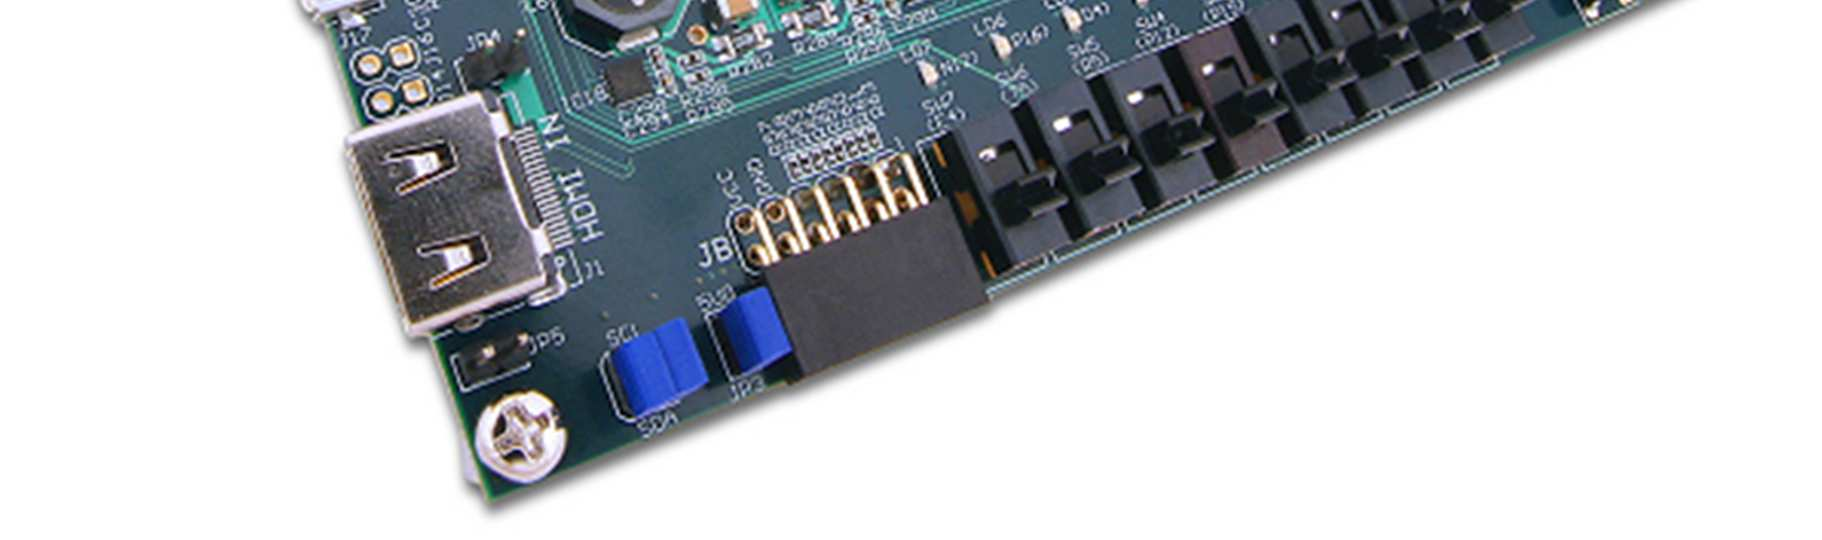 Digilent Atlys fejlesztő kártya Atlys Xilinx Spartan-6 FPGA fejlesztő kártya Xilinx Spartan-6 LX45 FPGA 128Mbyte DDR2 16-bit (adatbusz) 10/100/1000 Ethernet PHY USB2 port (programozás és adatátvitel